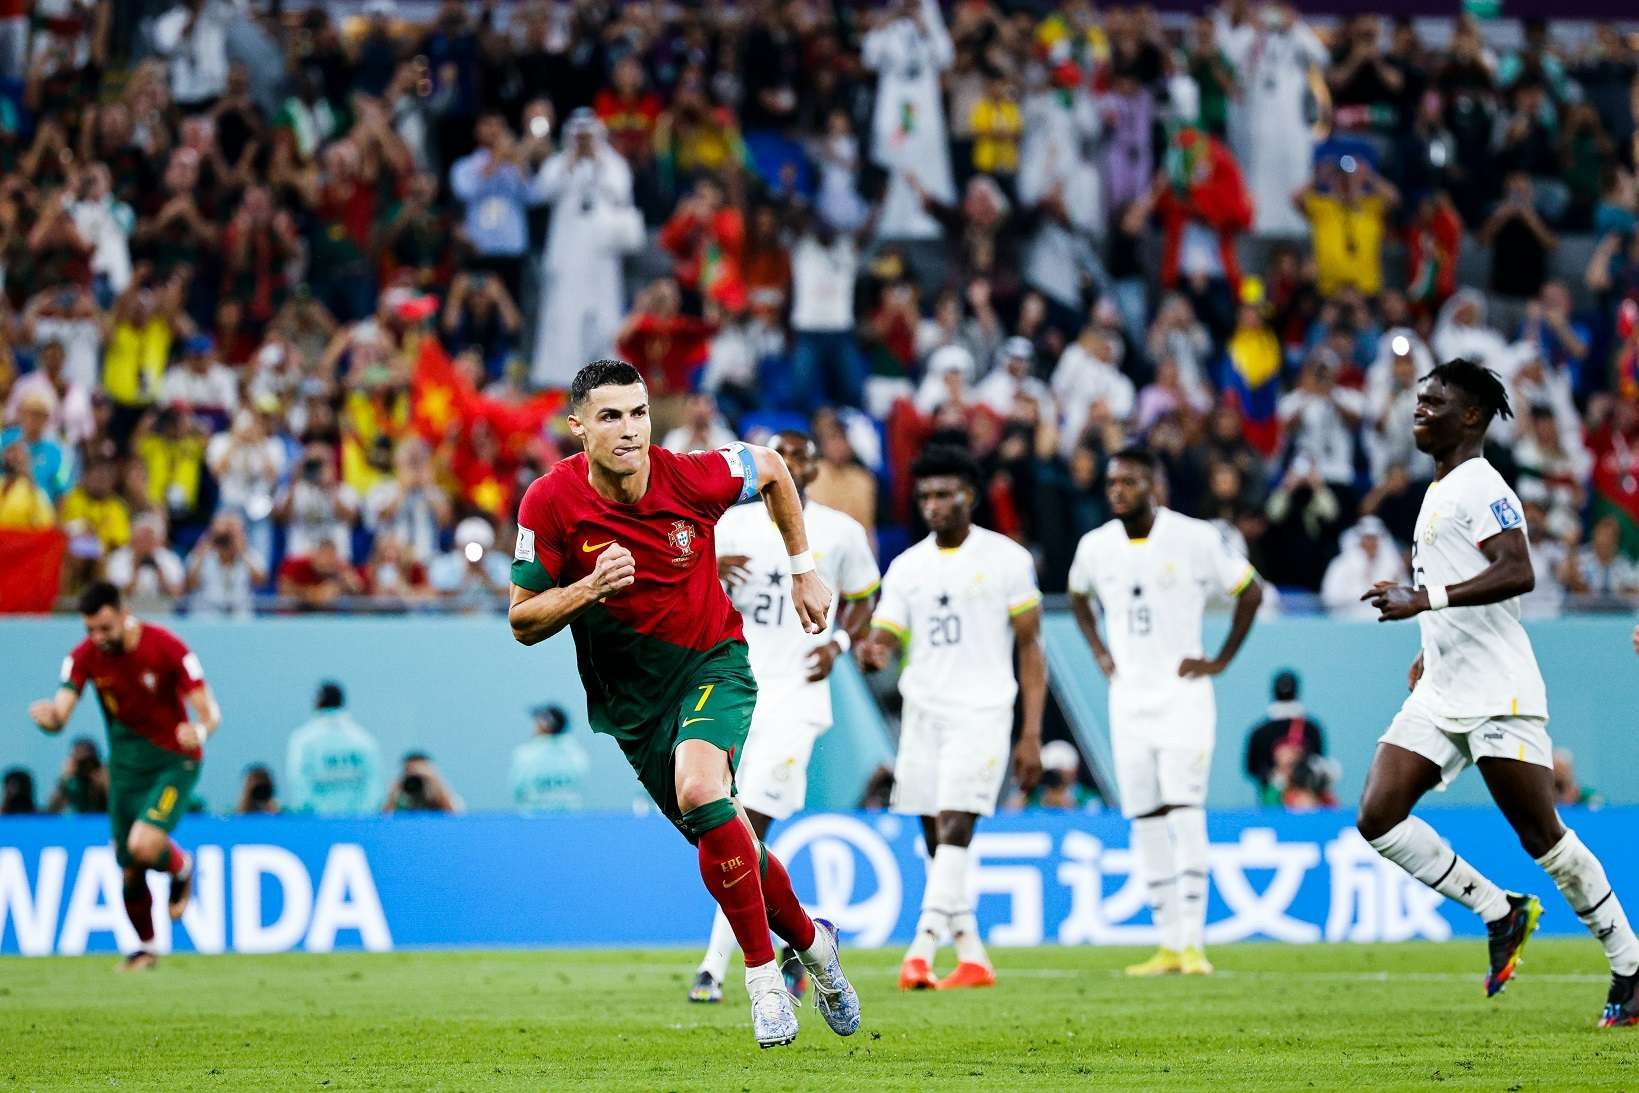 Cristiano Ronaldo langsung meluapkan kegembiraannya usai mencetak gol ke gawang Ghana dari titik putih. (Foto: Twitter/@Selecaoportugal)